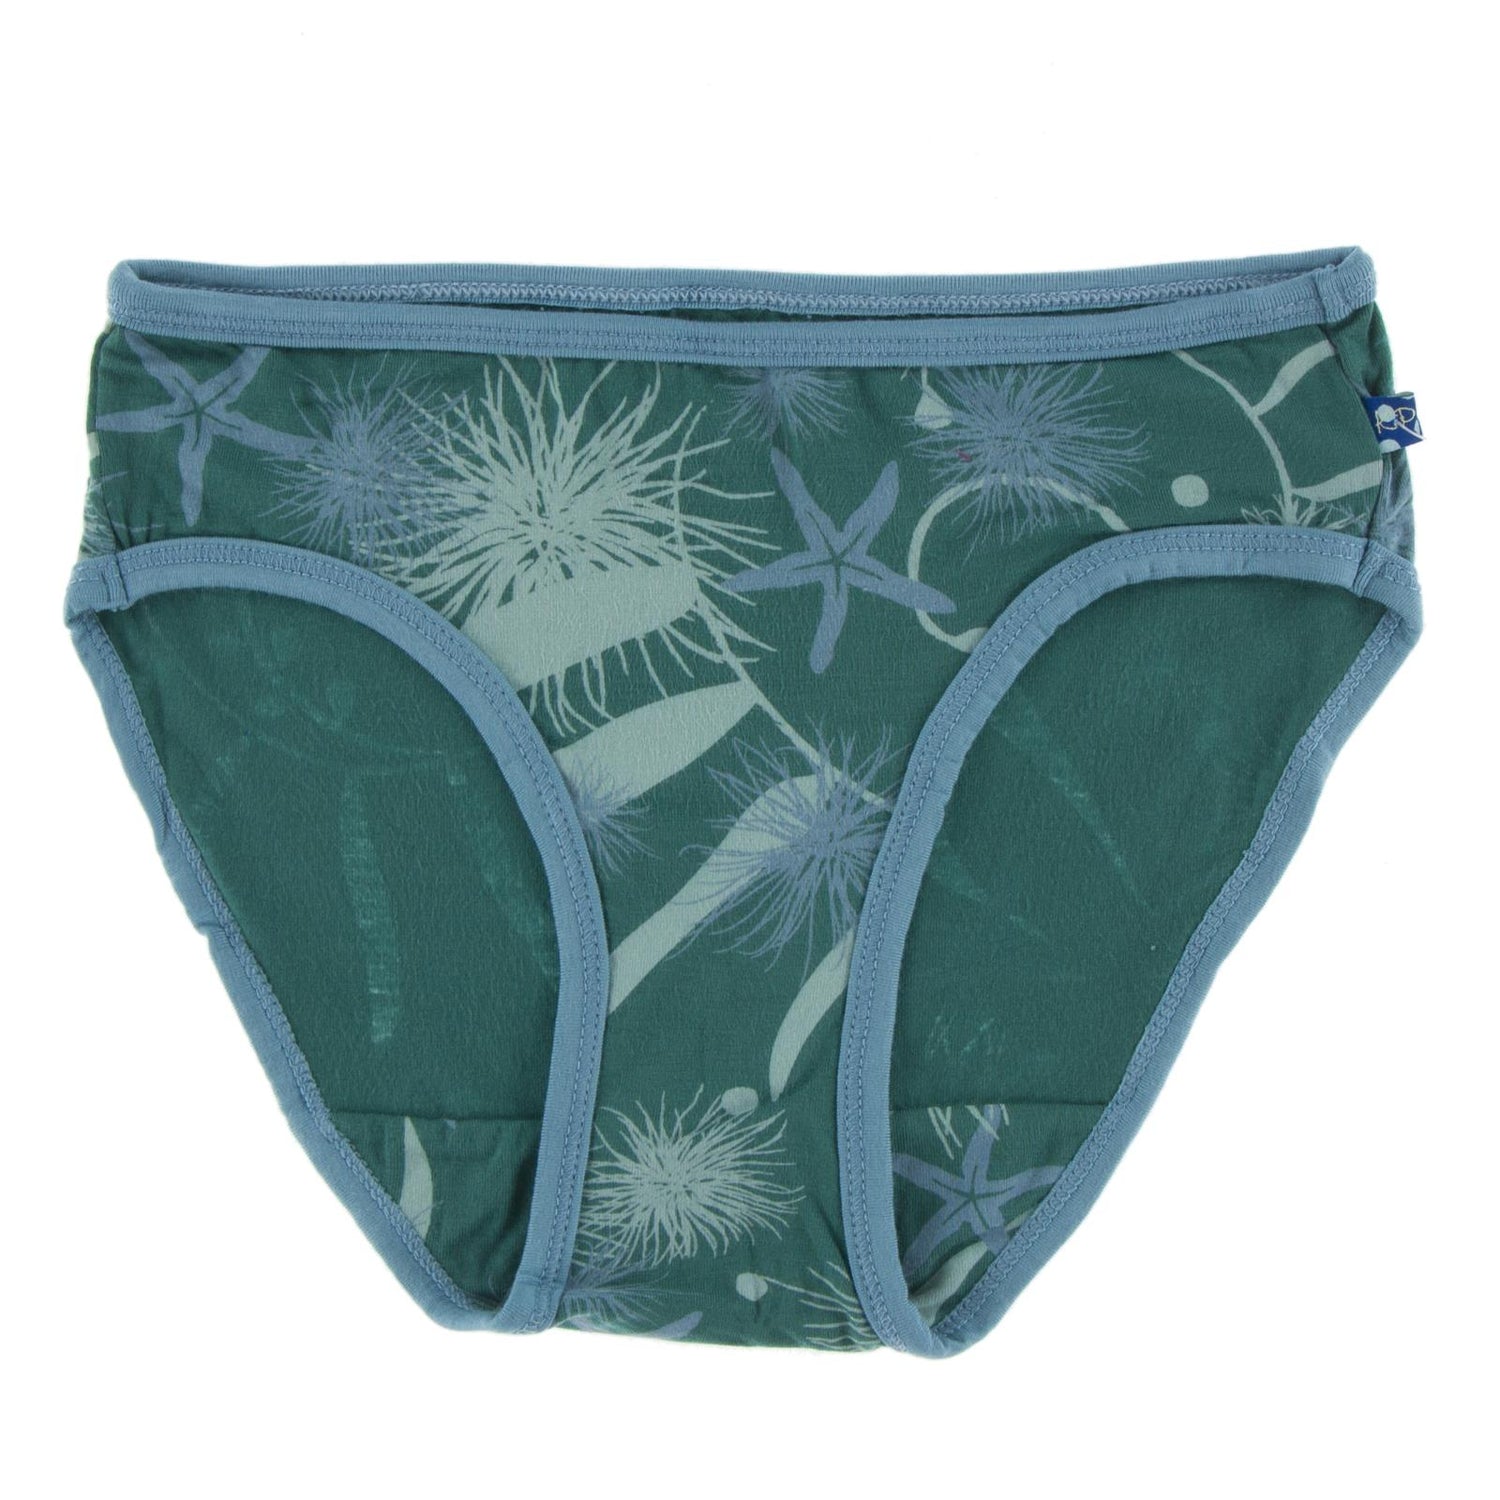 Print Underwear in Ivy Sea Garden with Blue Moon Trim